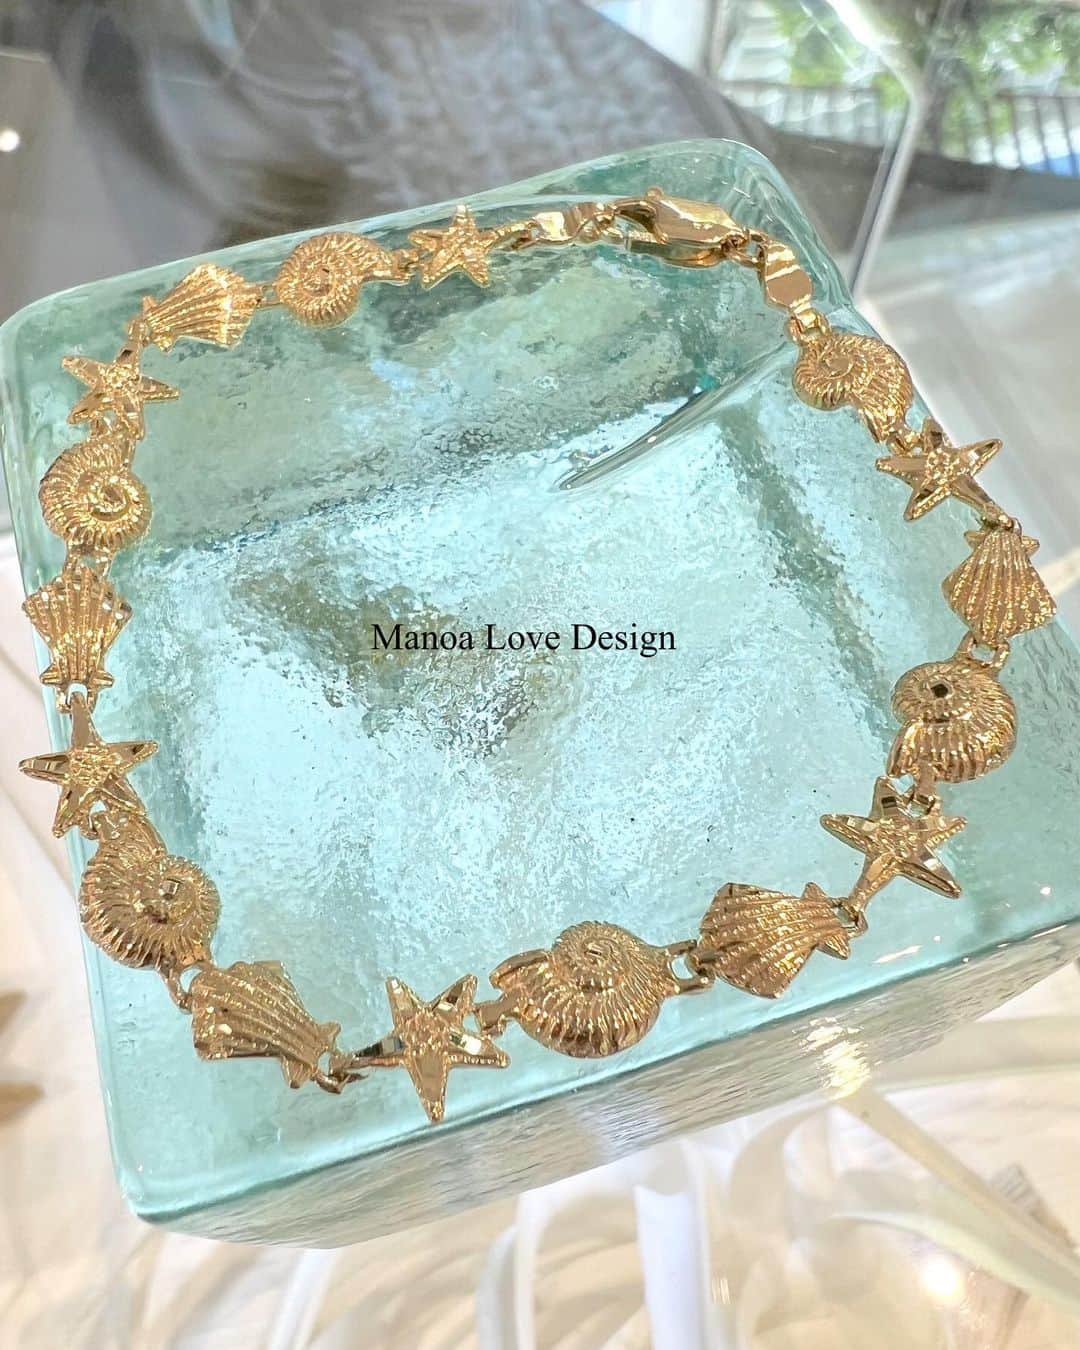 Manoa Love Design Hawaiiのインスタグラム